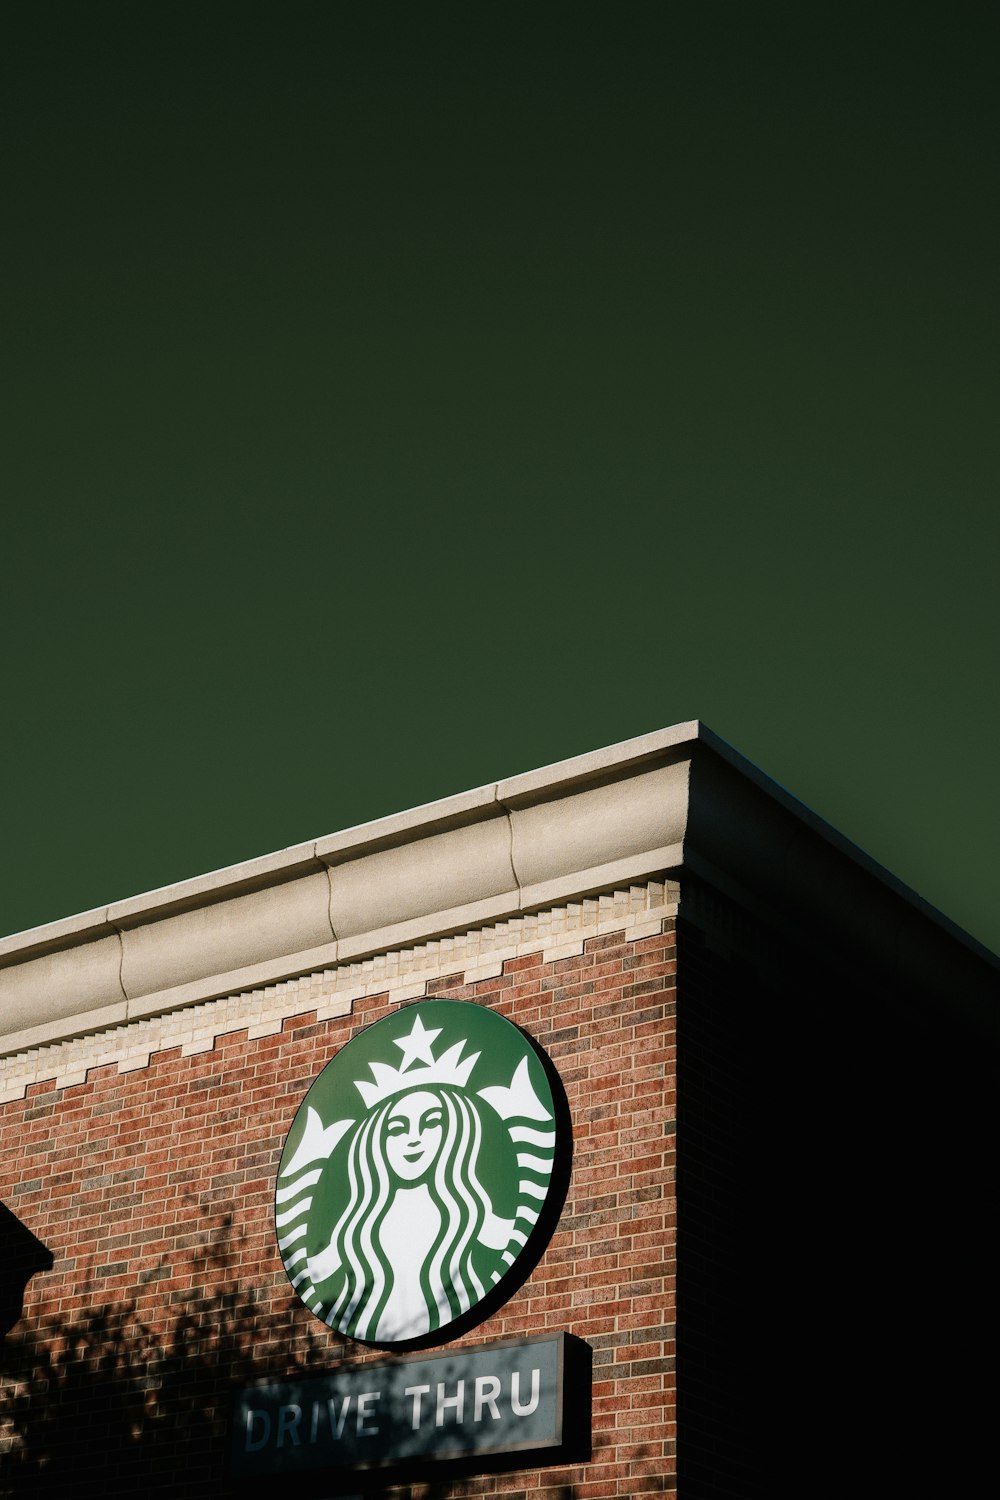 Un letrero de Starbucks en el costado de un edificio de ladrillo